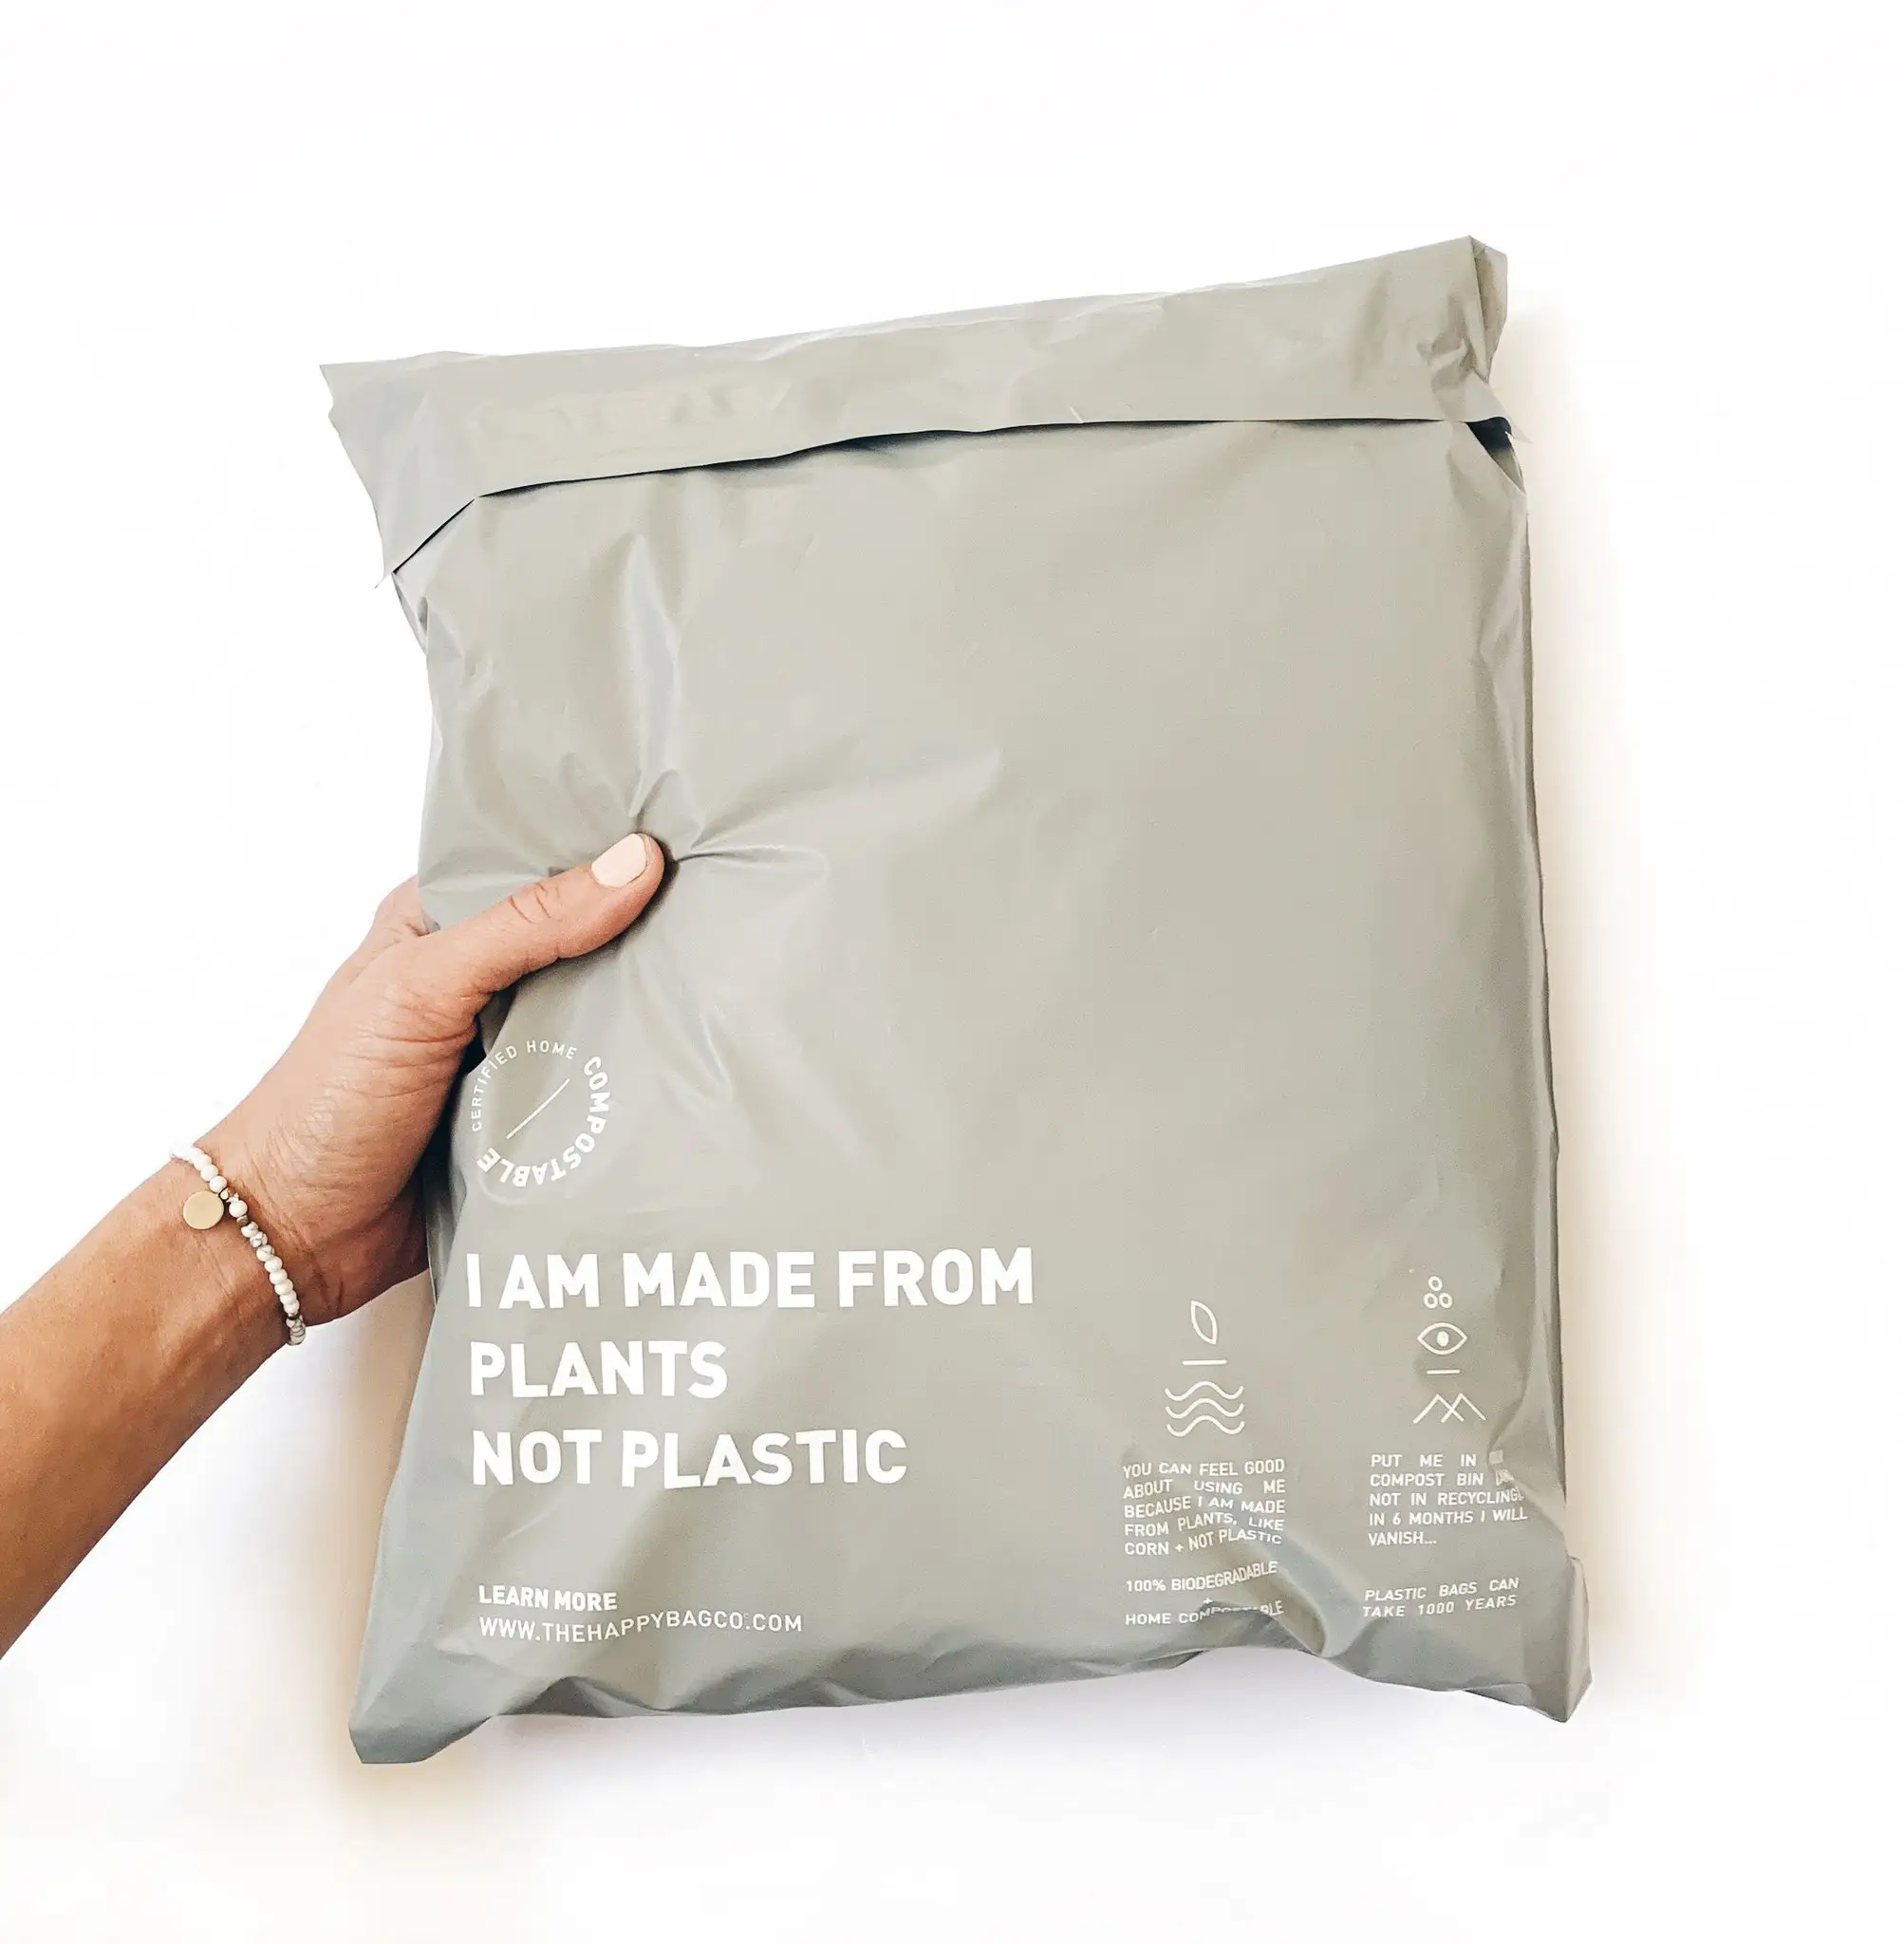 Mailer compostável reciclável, alta qualidade, grande, venda, preto, eco amigável, bolsa de mailer, compostável